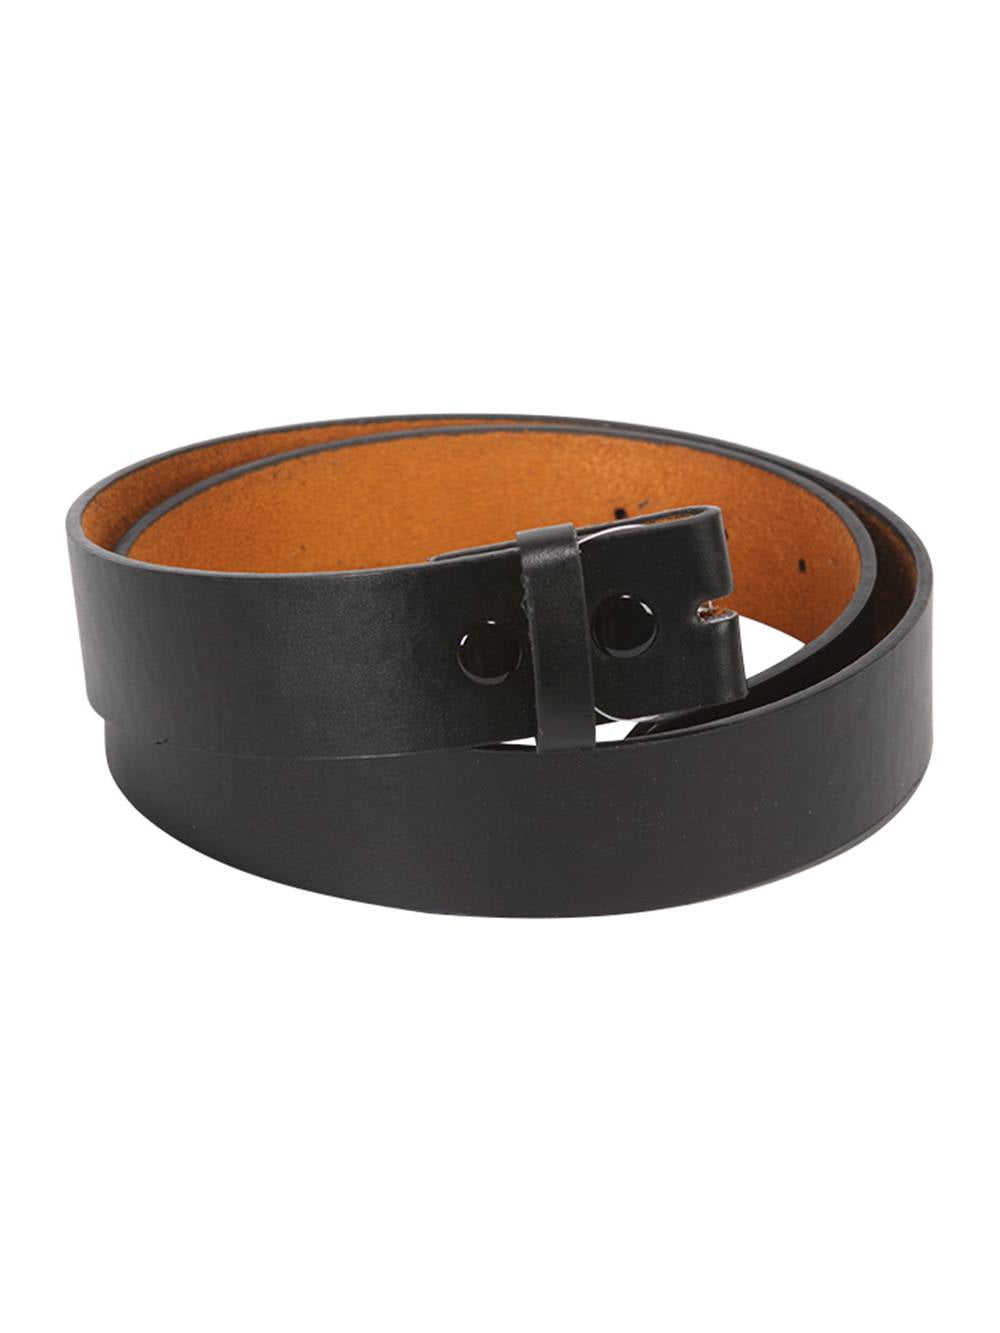 Gravity Trading Mens/Womens Black Leather Belt for Buckles, Medium, Men's